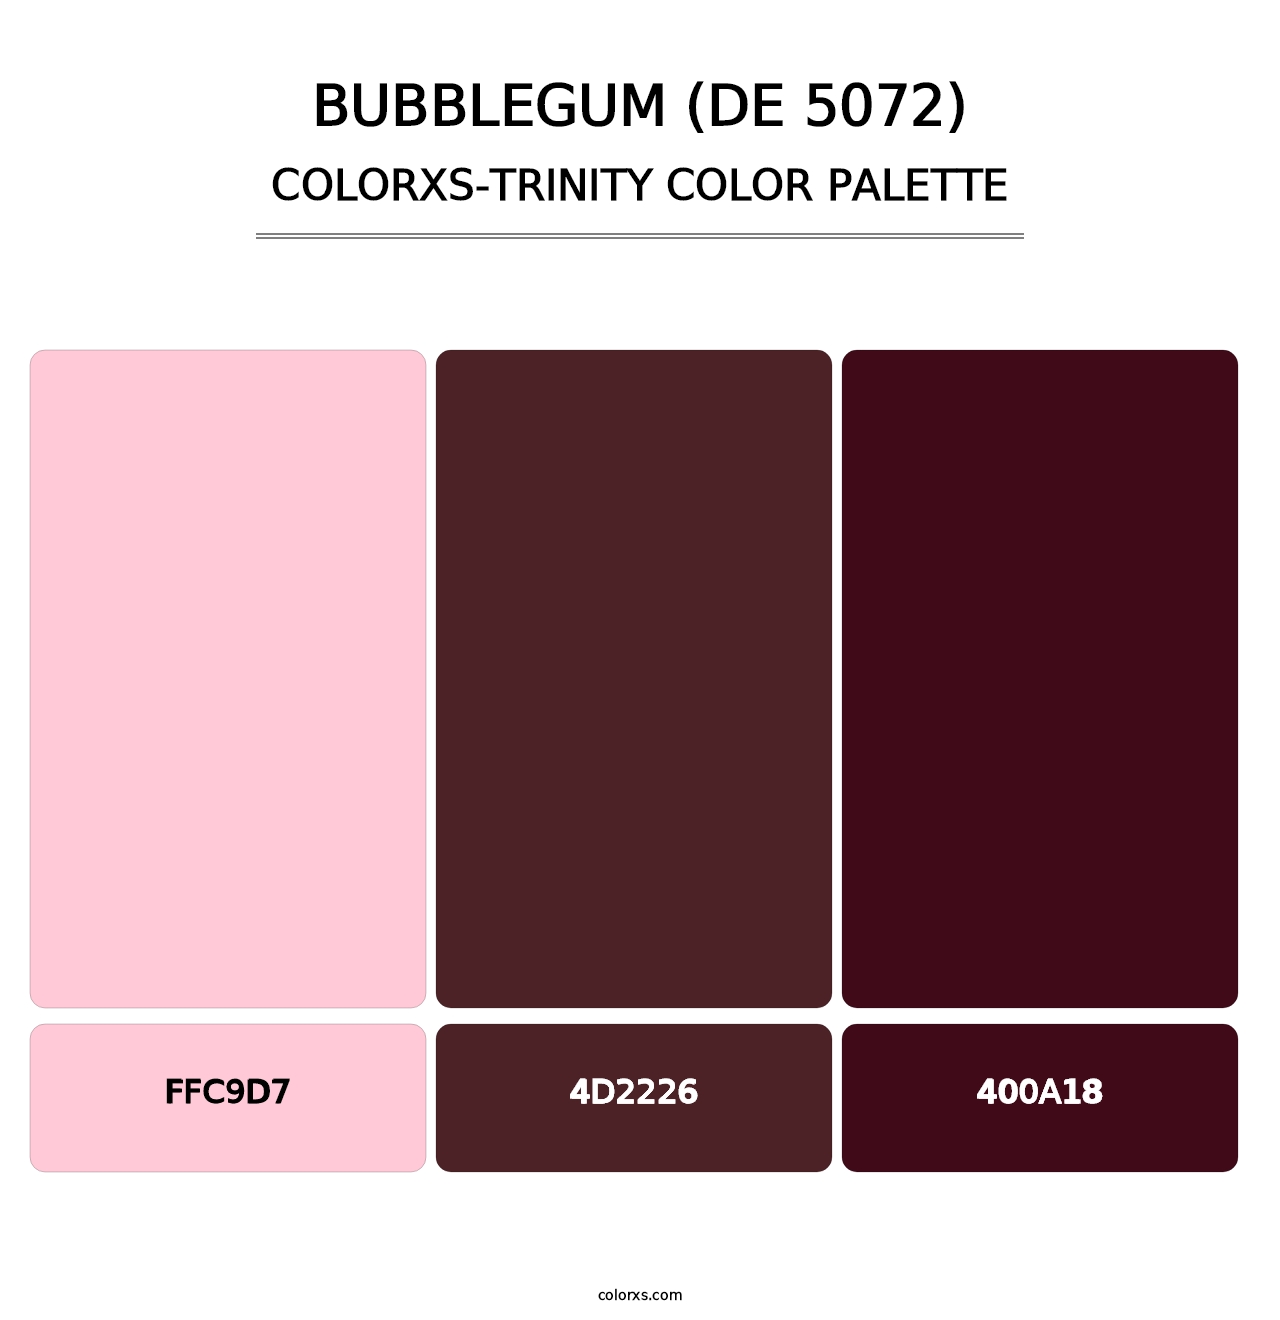 Bubblegum (DE 5072) - Colorxs Trinity Palette